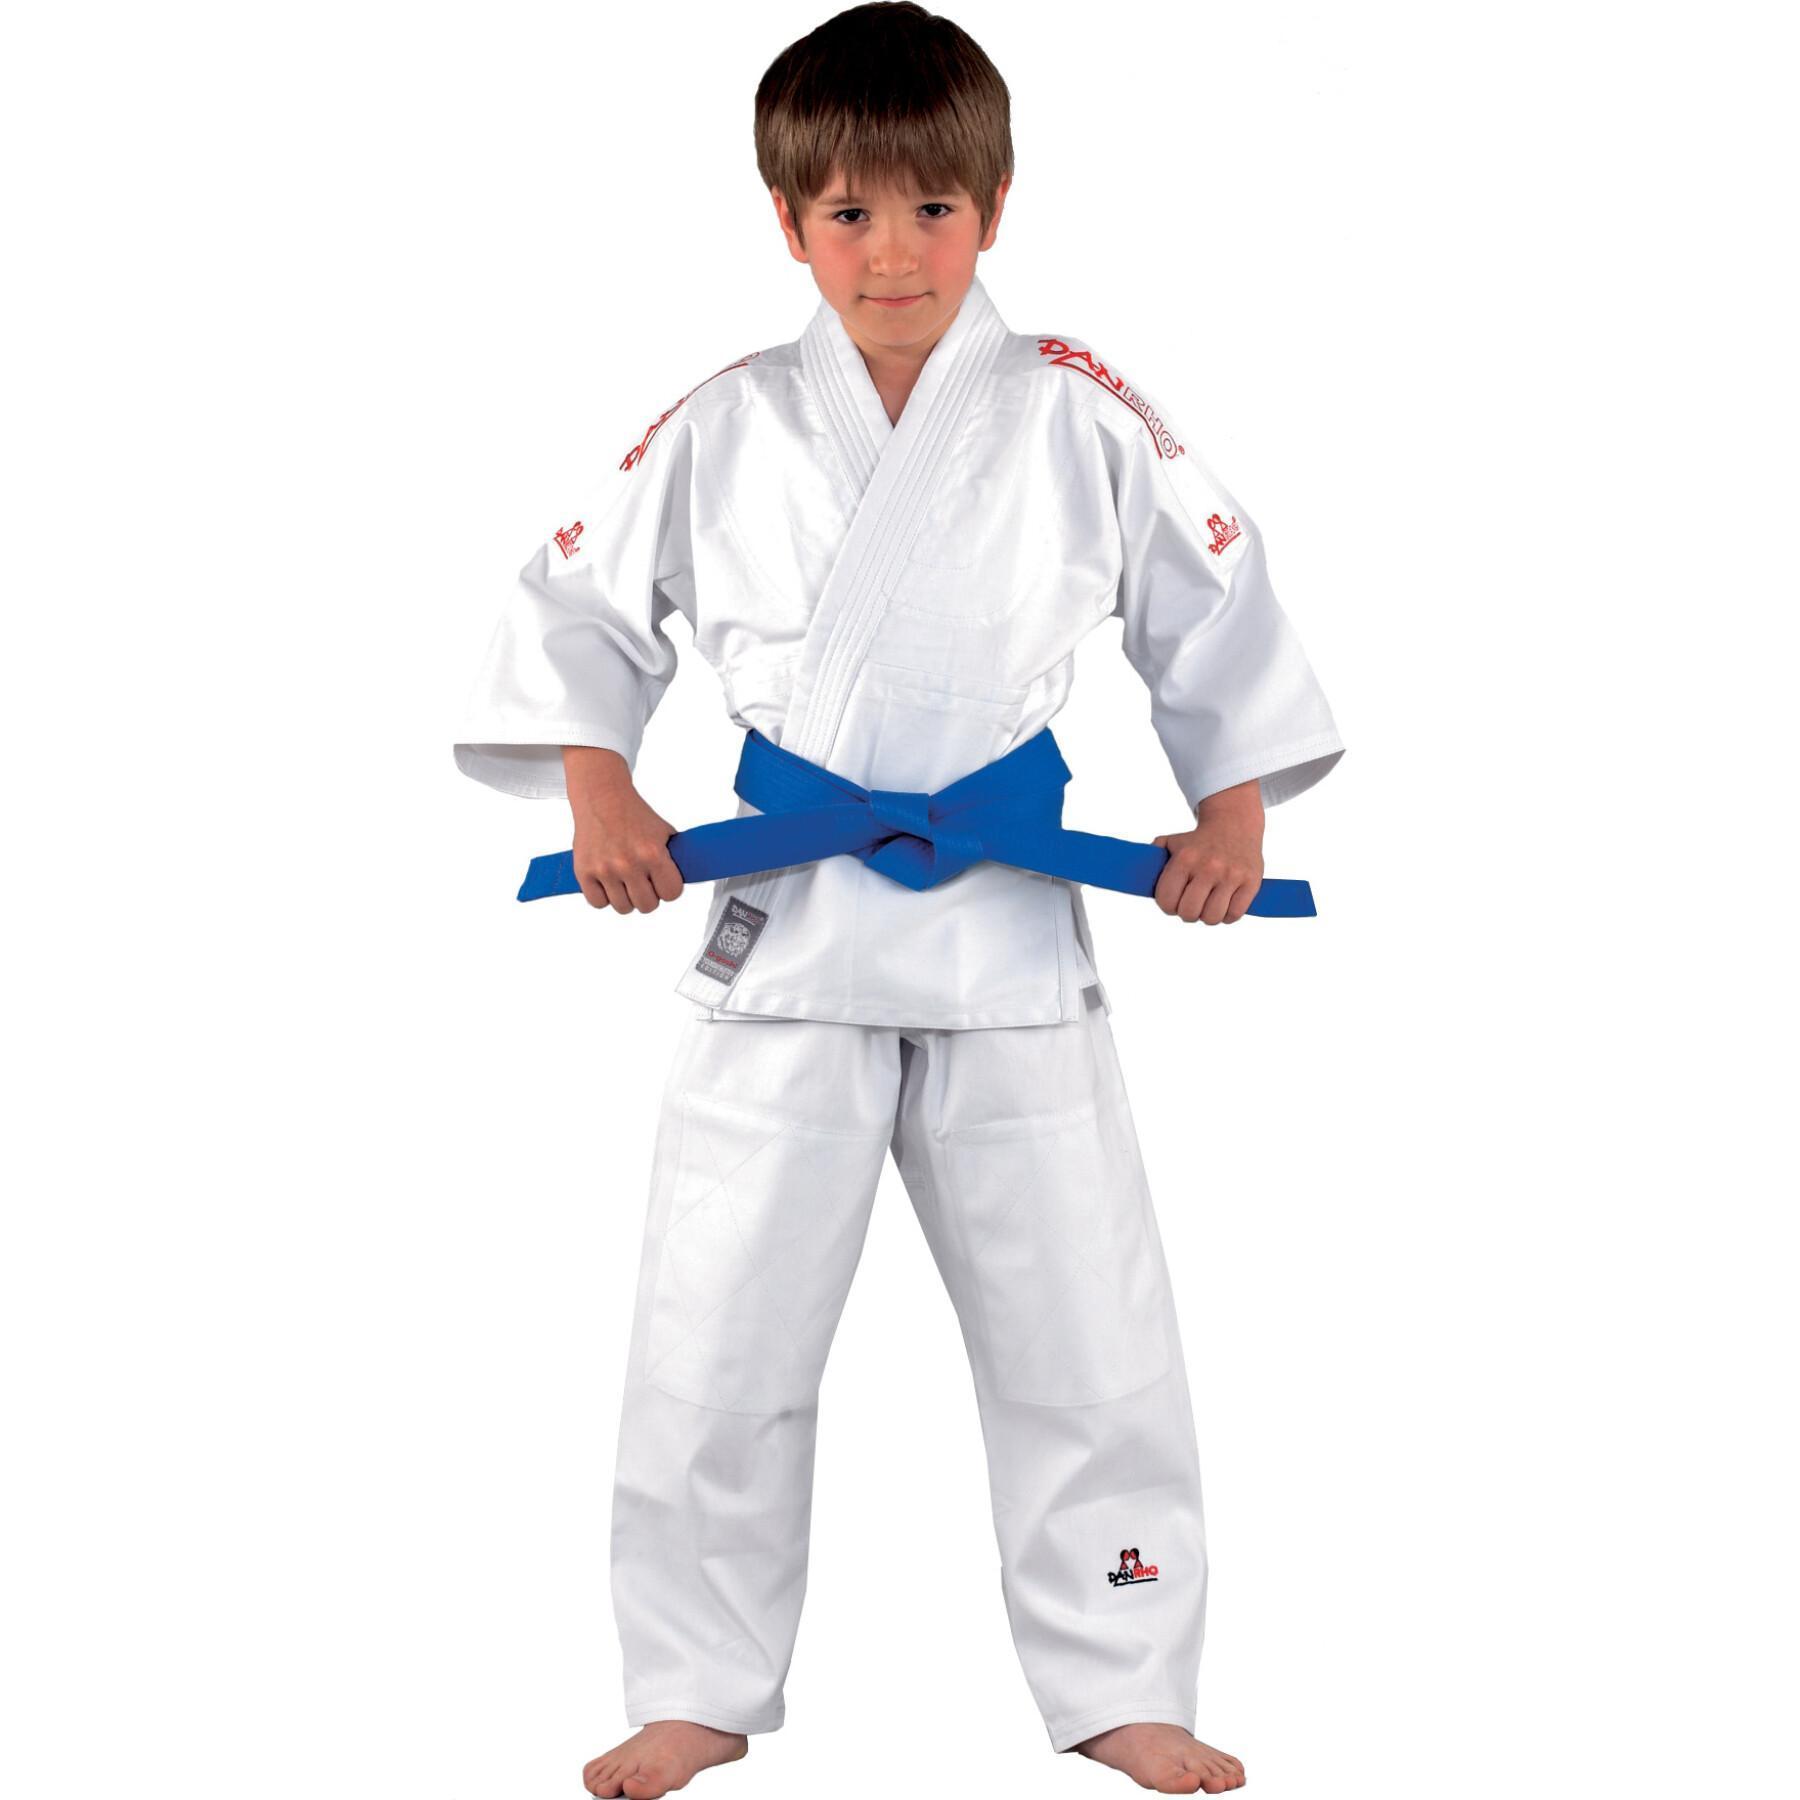 Kimono judo/jujitsu child Danrho Ogoshi